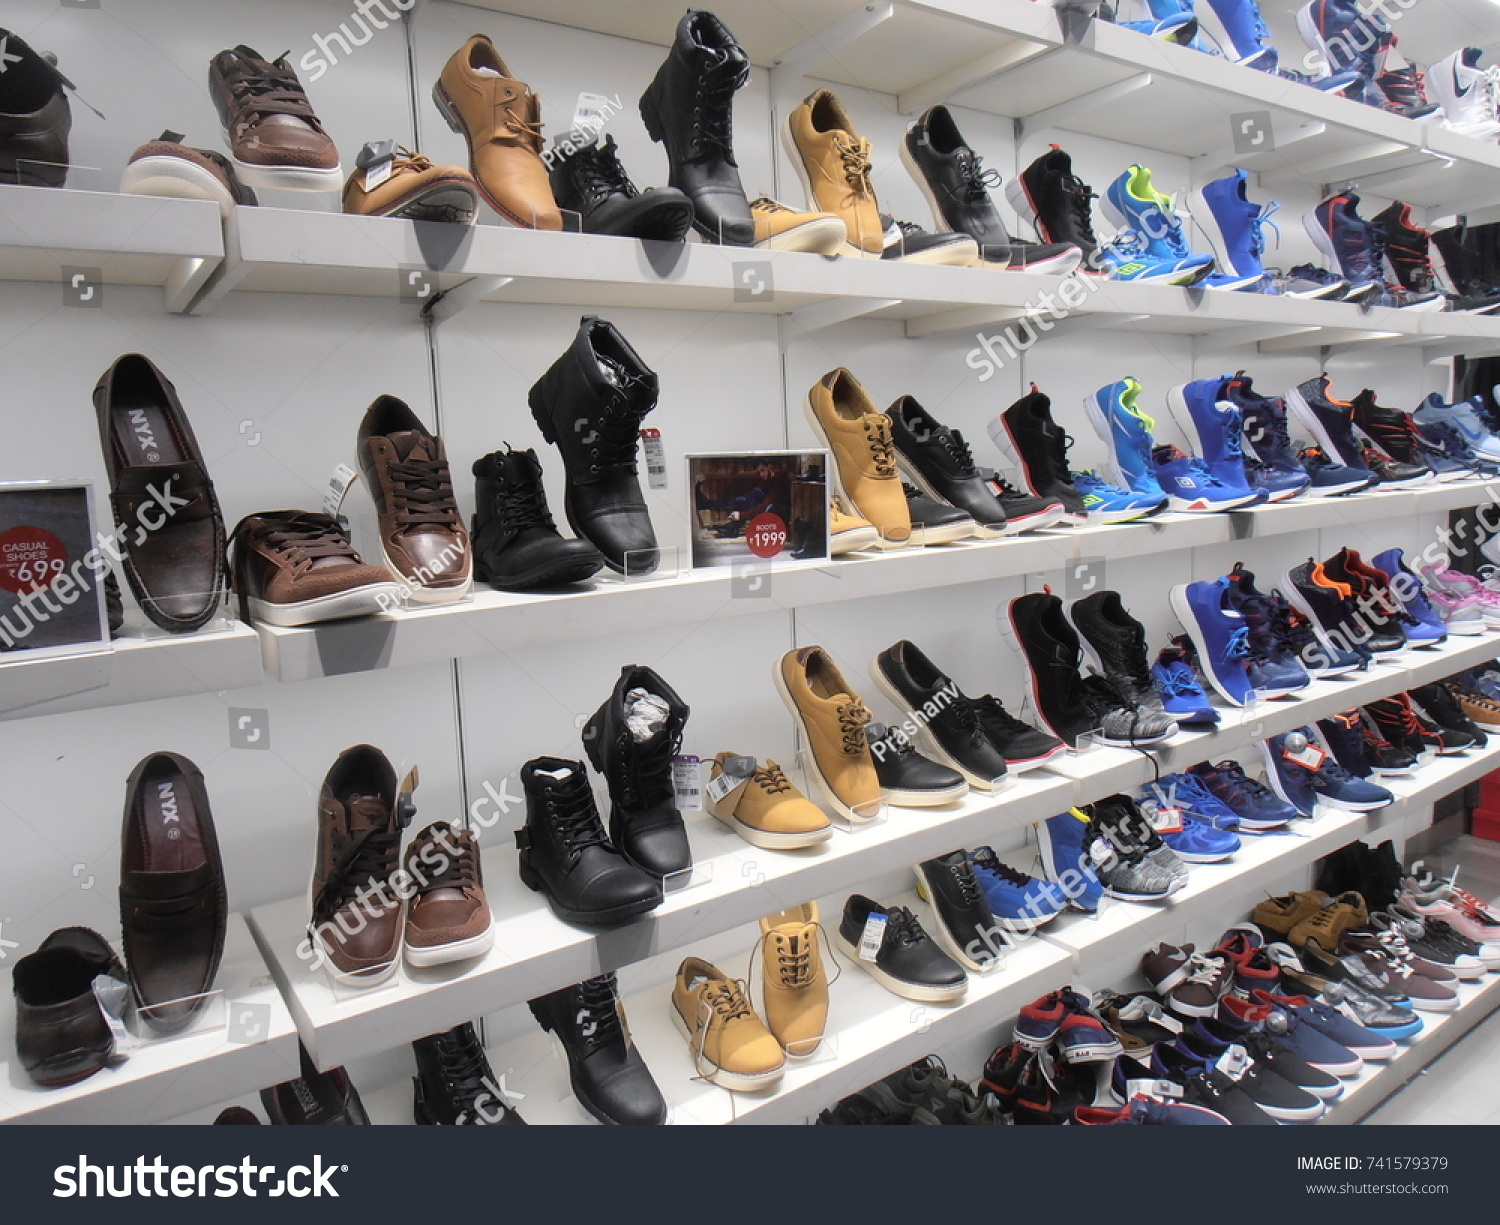 big bazaar offers shoes